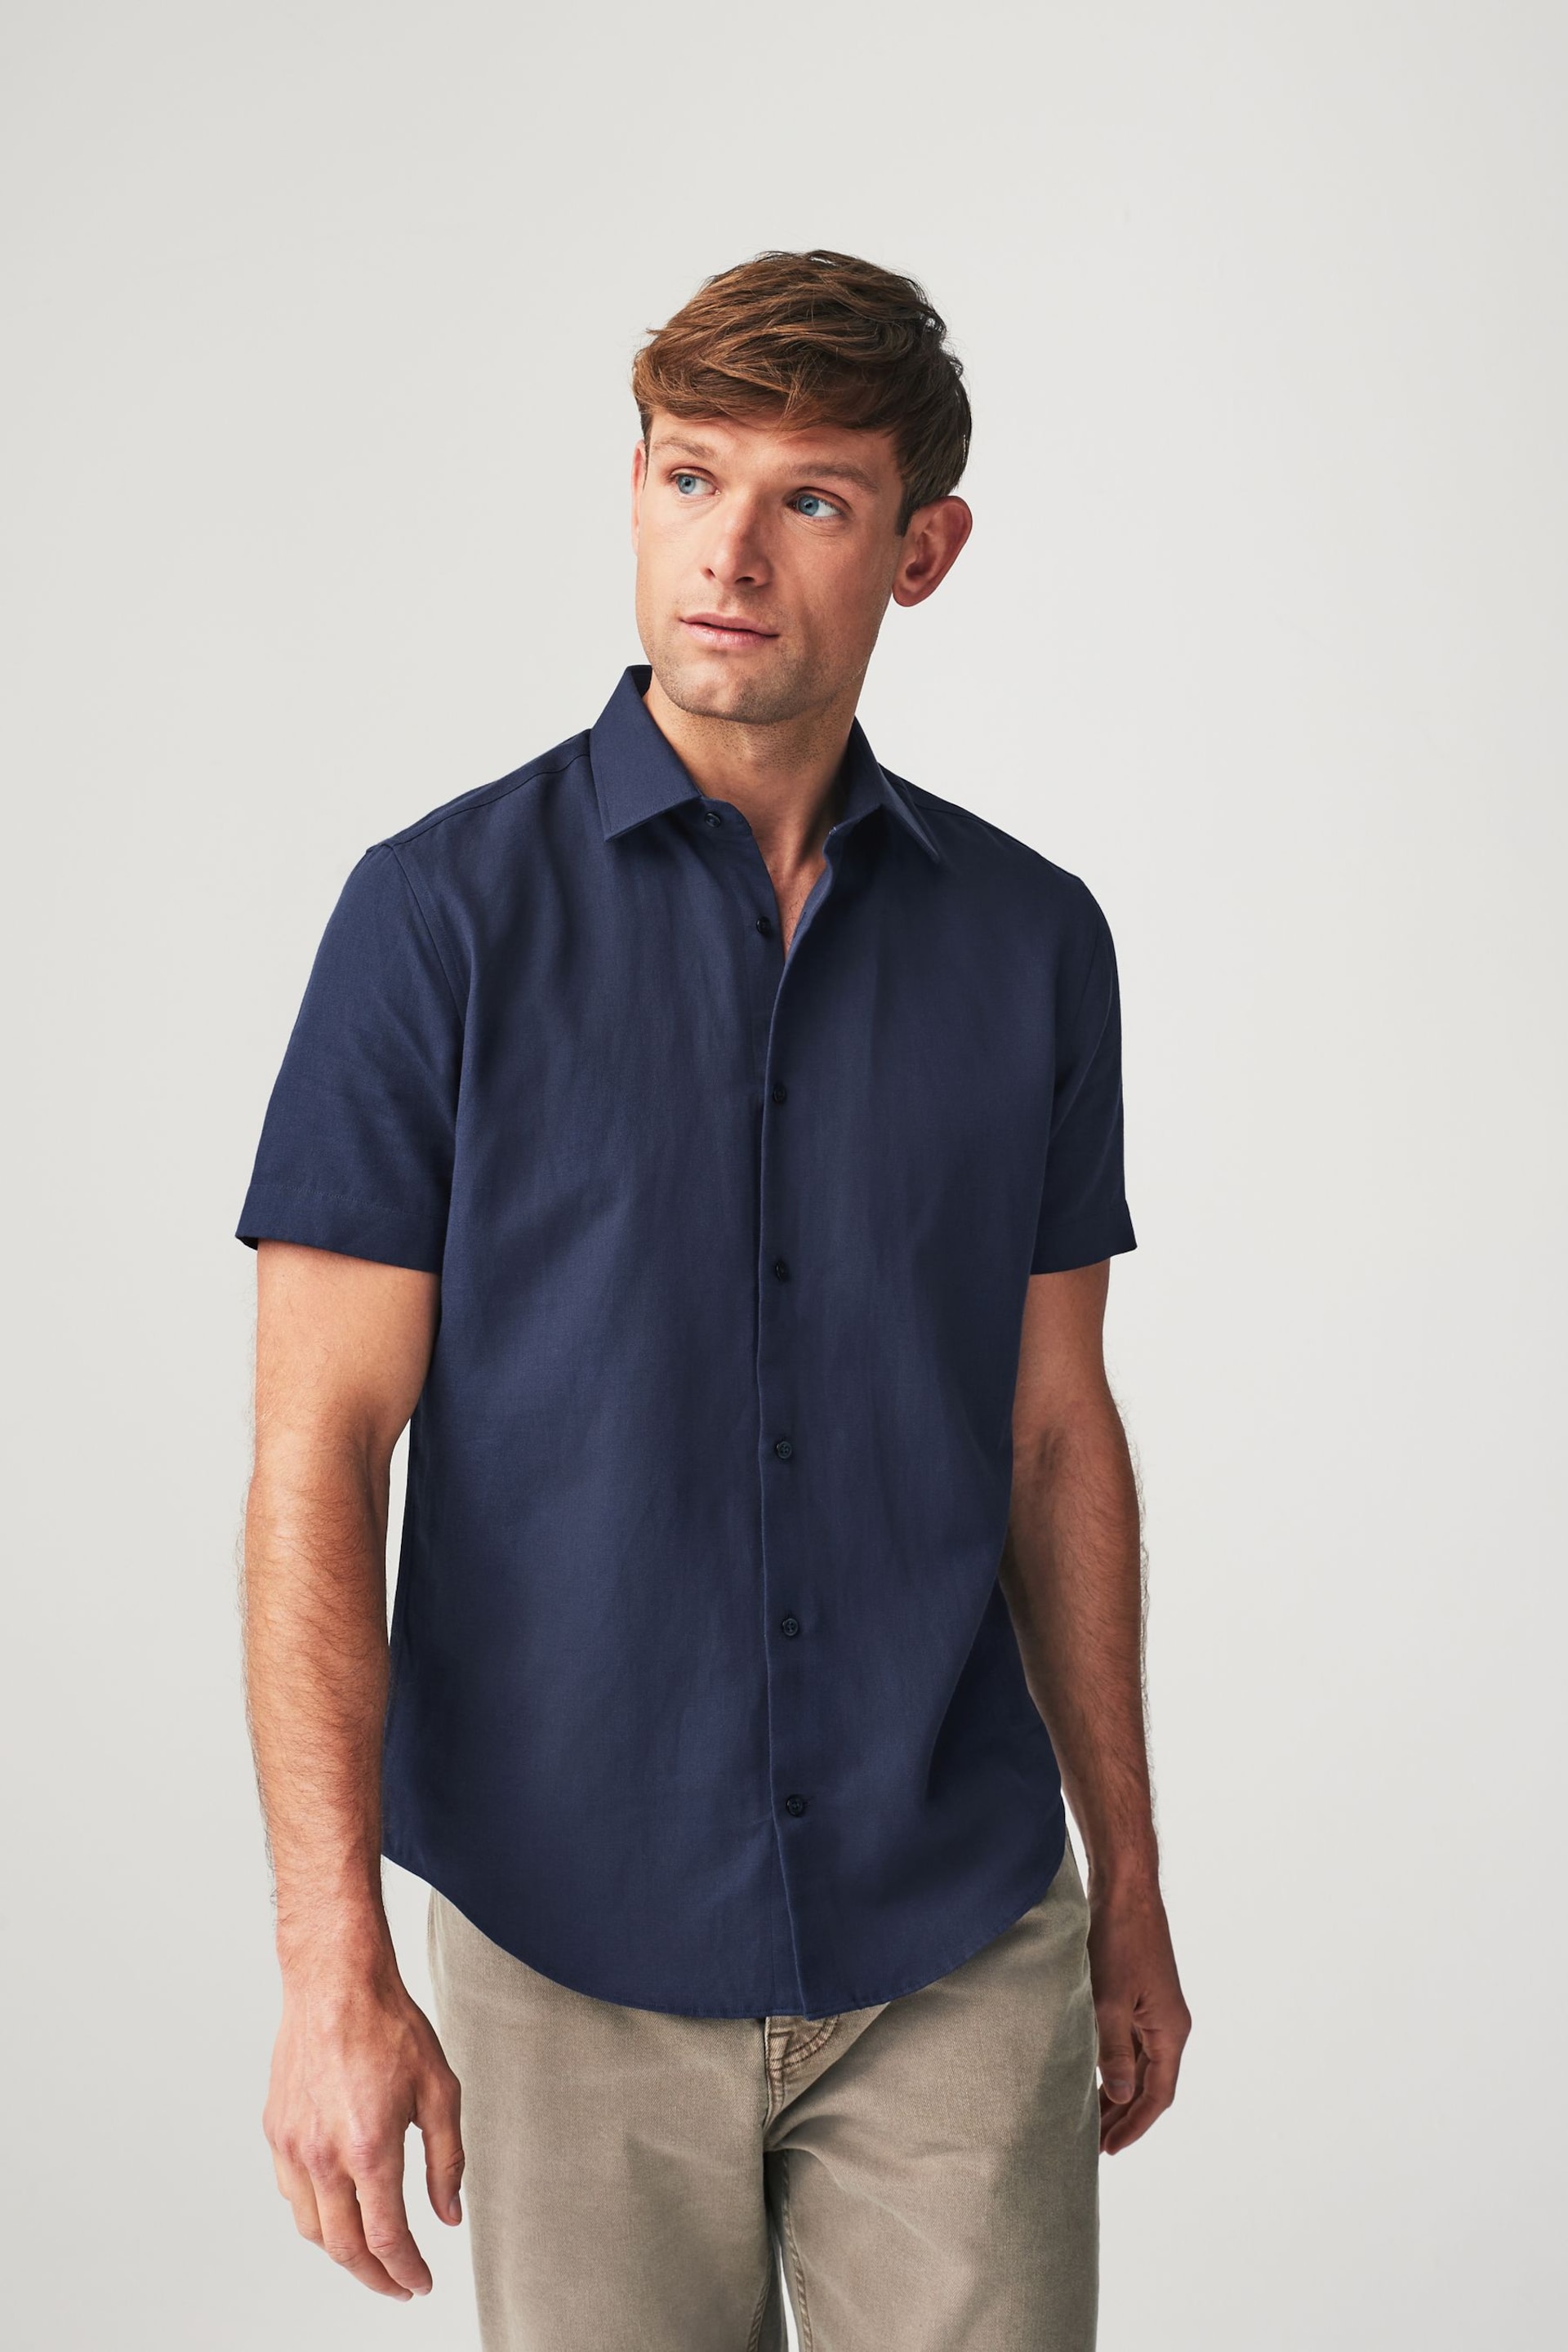 Navy Blue Linen Blend Shirt - Image 4 of 7